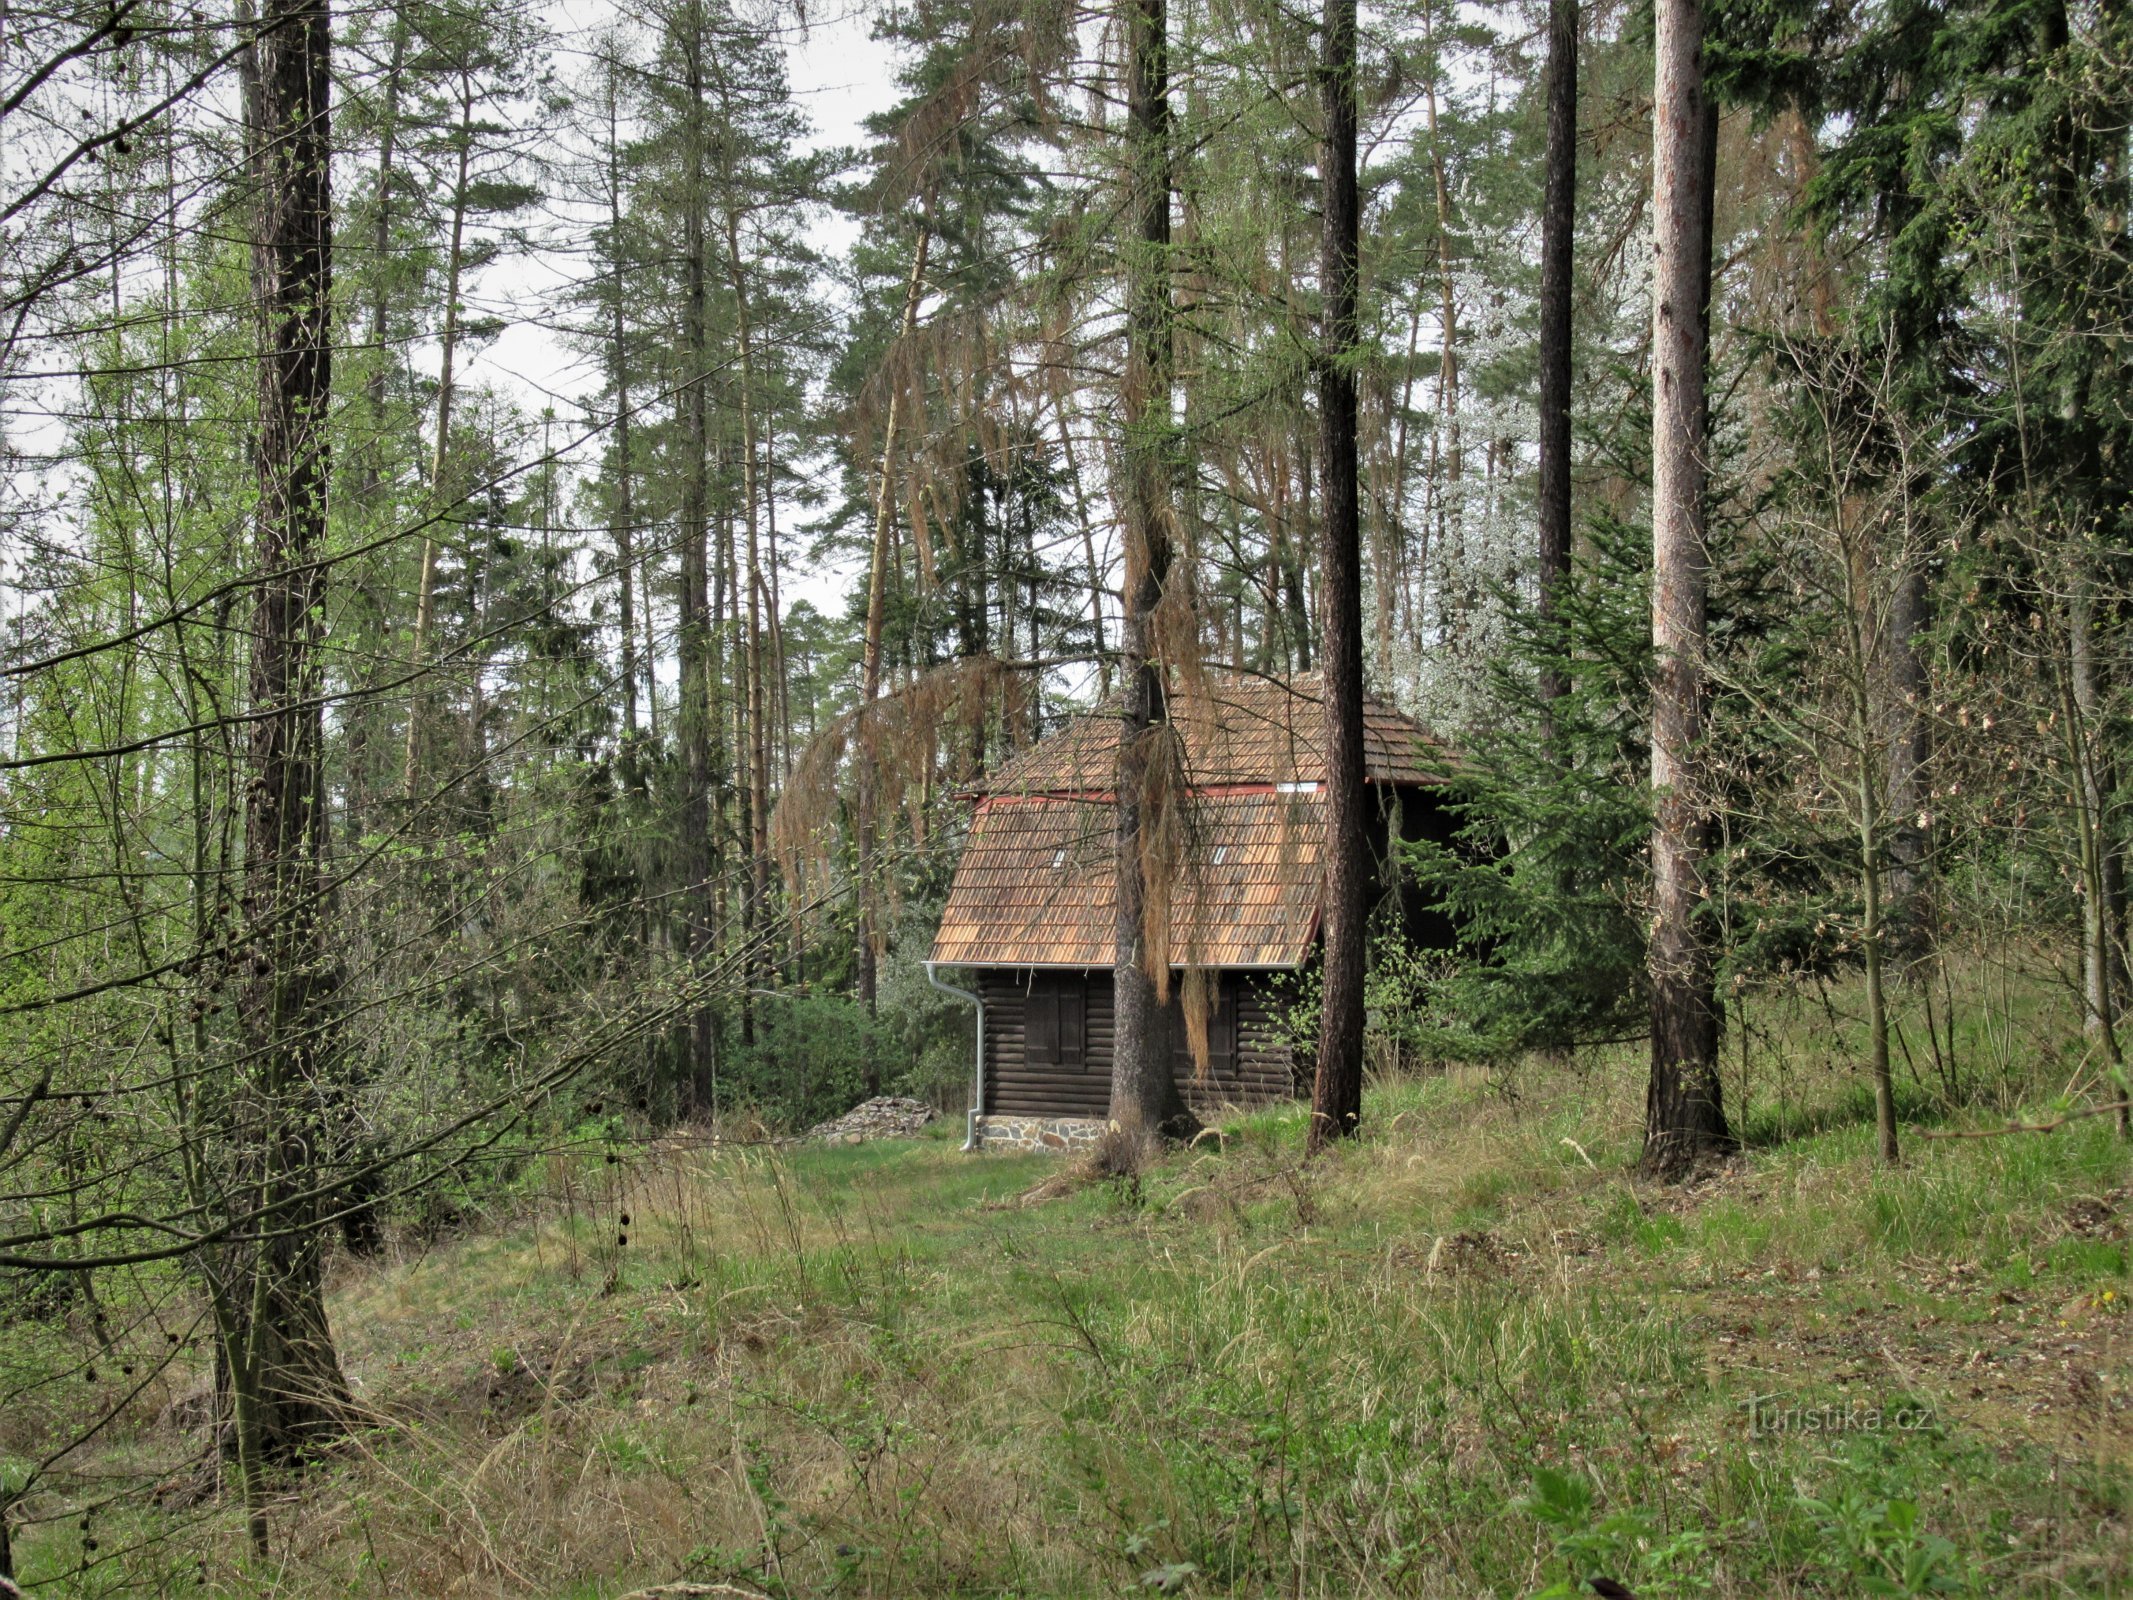 Hahn's cottage